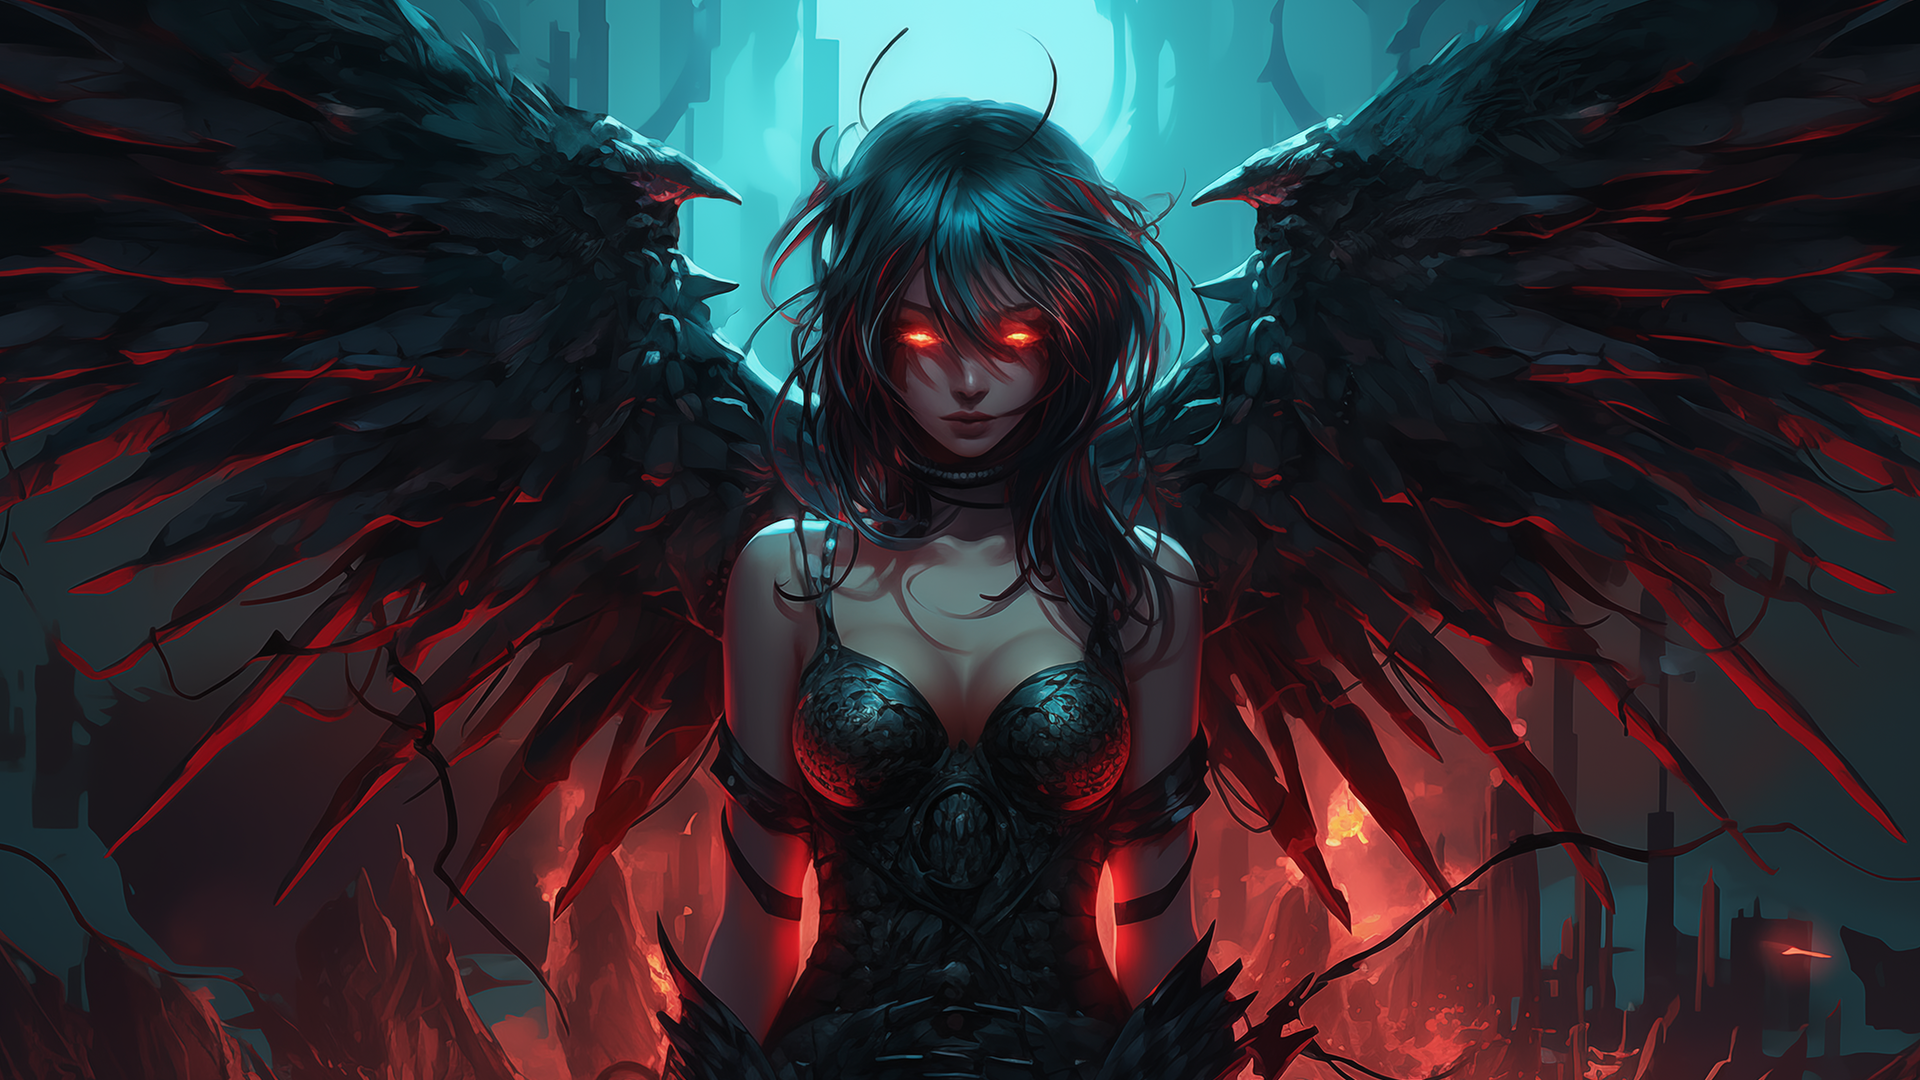 General 1920x1080 AI art angel evil red wings women black hair dark hair glowing eyes red eyes looking at viewer digital art closed mouth cleavage long hair